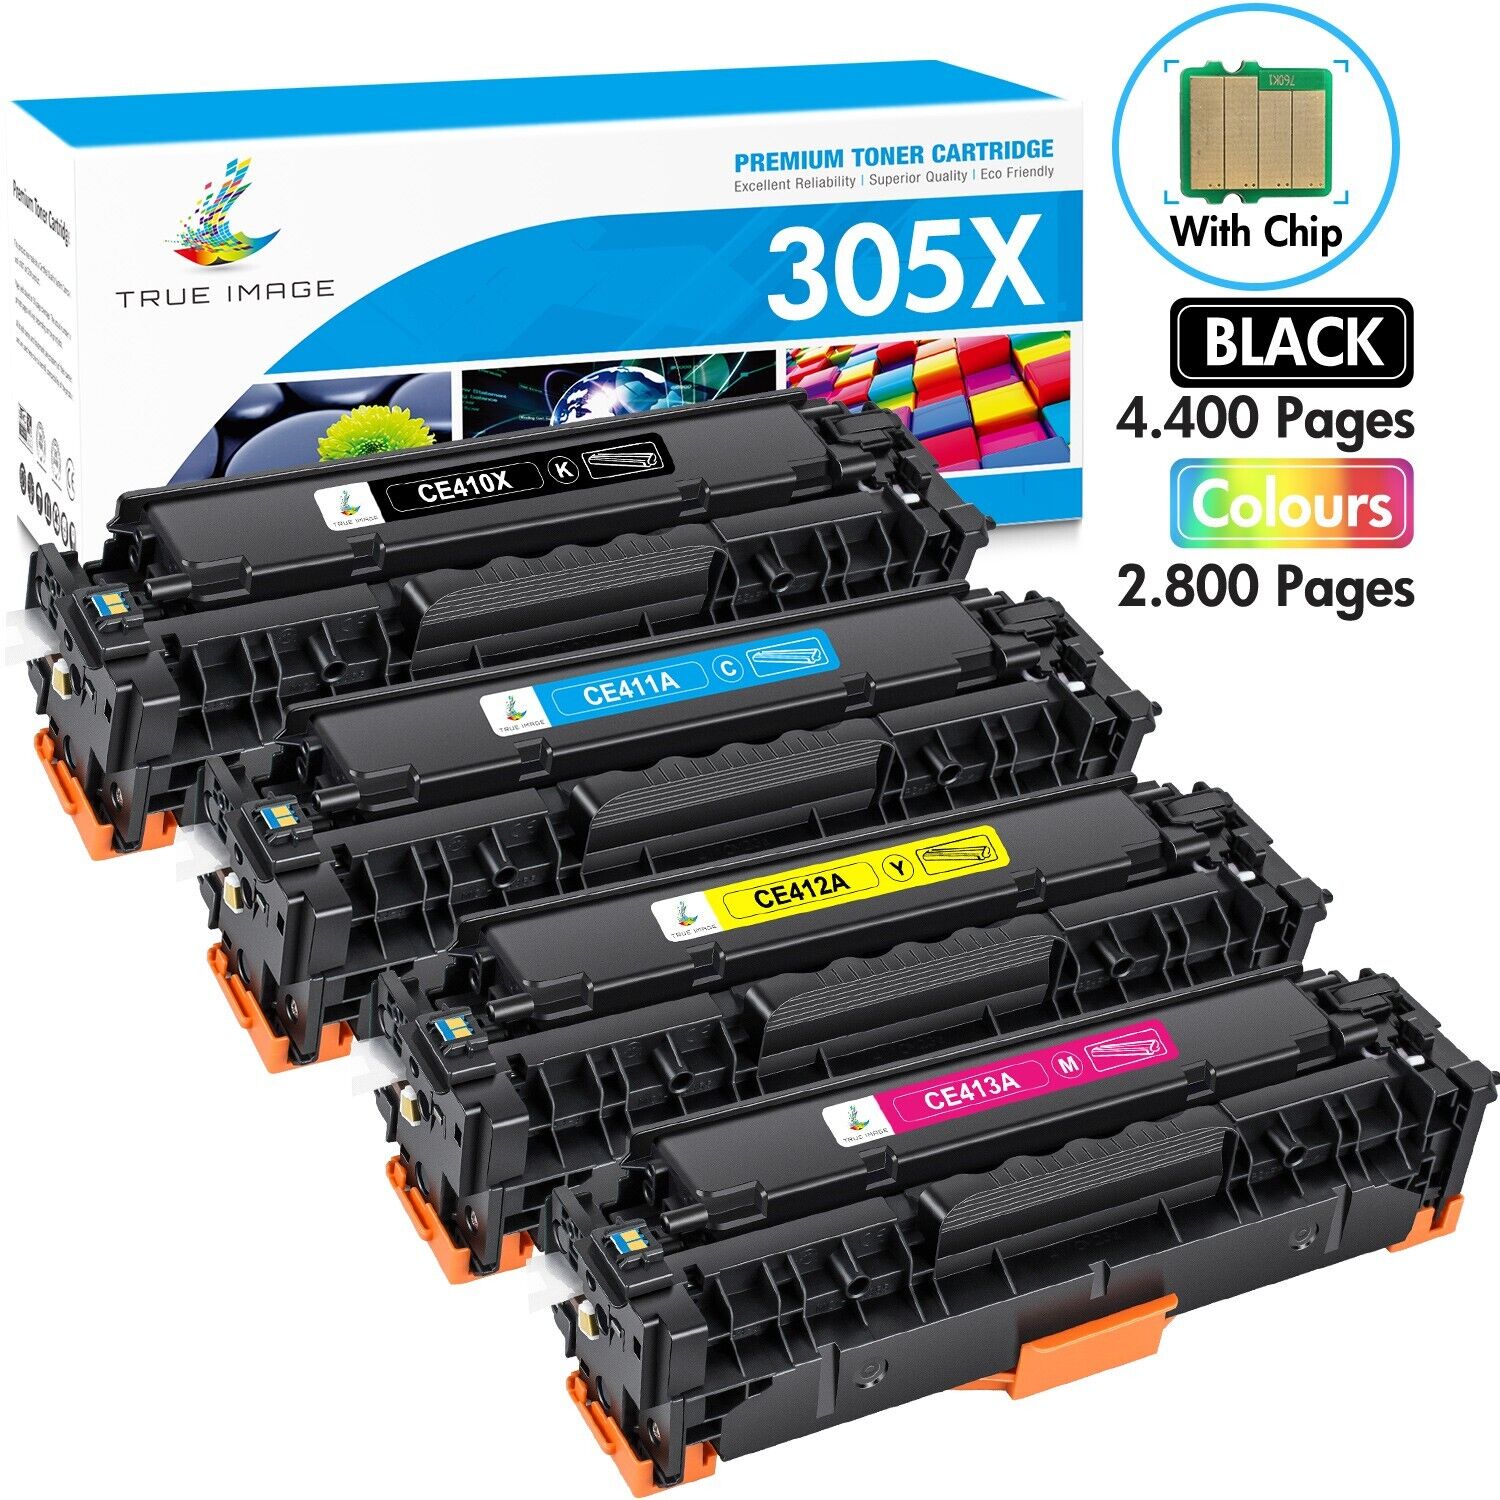 4 Pack 305X Toner for HP 305A CE410A LaserJet Pro 400 Color M451dw M475dw M451dn